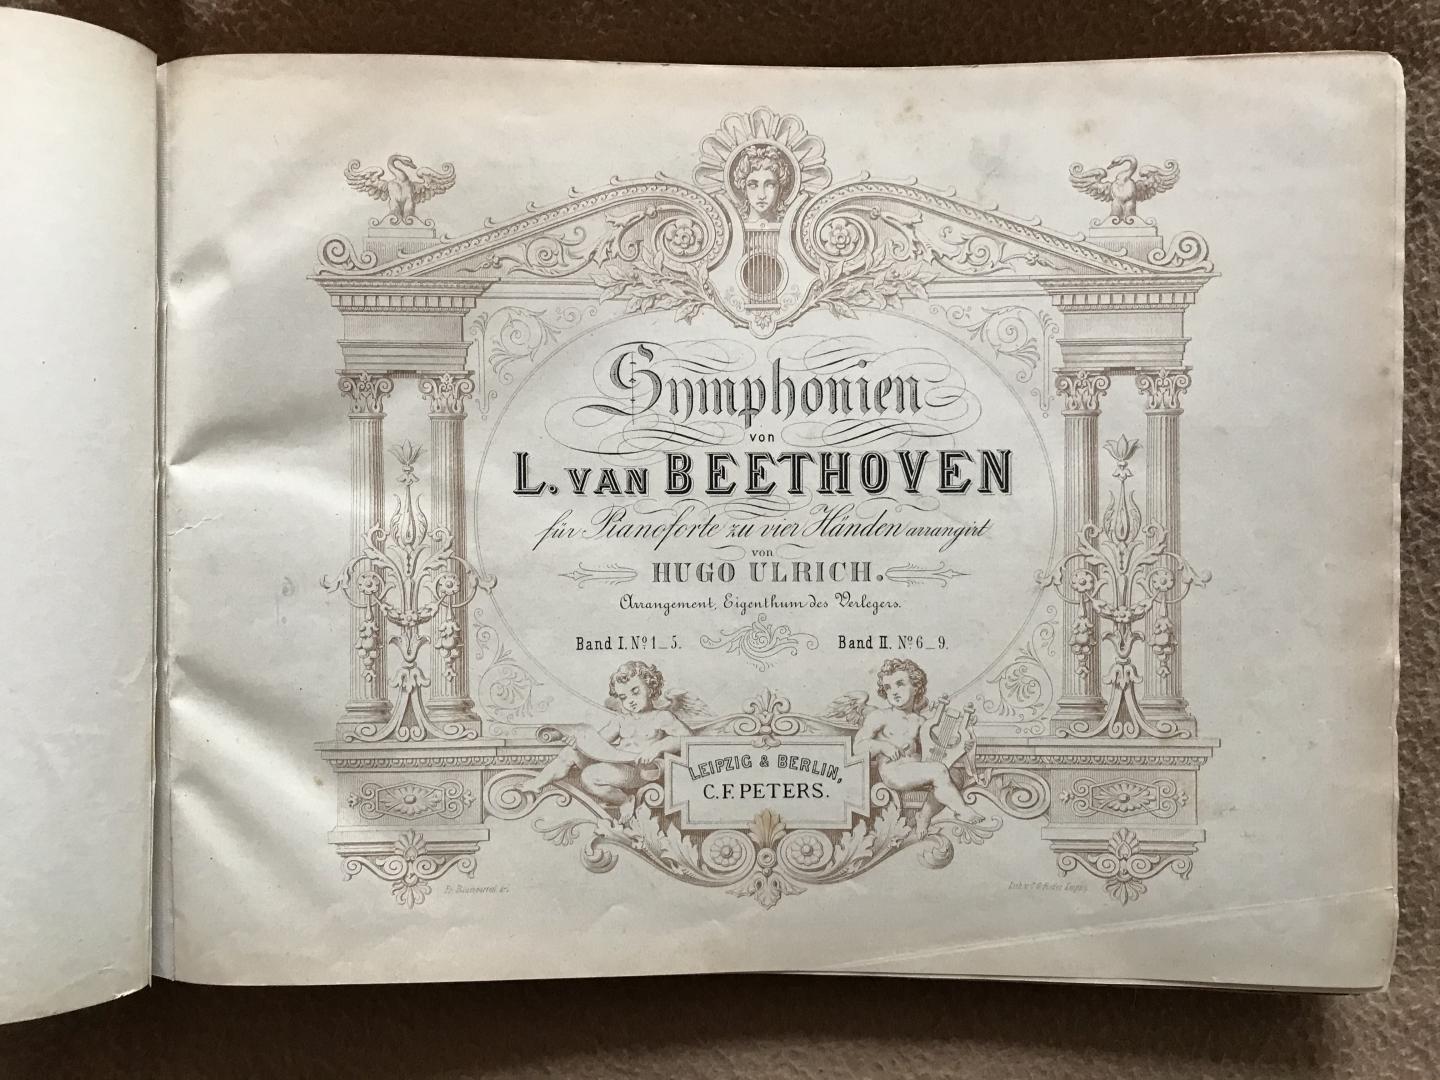 Beethoven, Ludwig van / Hugo Ulrich (piano quatremains arr.) - Symphonien von L.van Beethoven, für Pianoforte zu vier Händen arrangirt von HUGO ULRICH, Band I (1 - 5) + Band II (6 - 9)